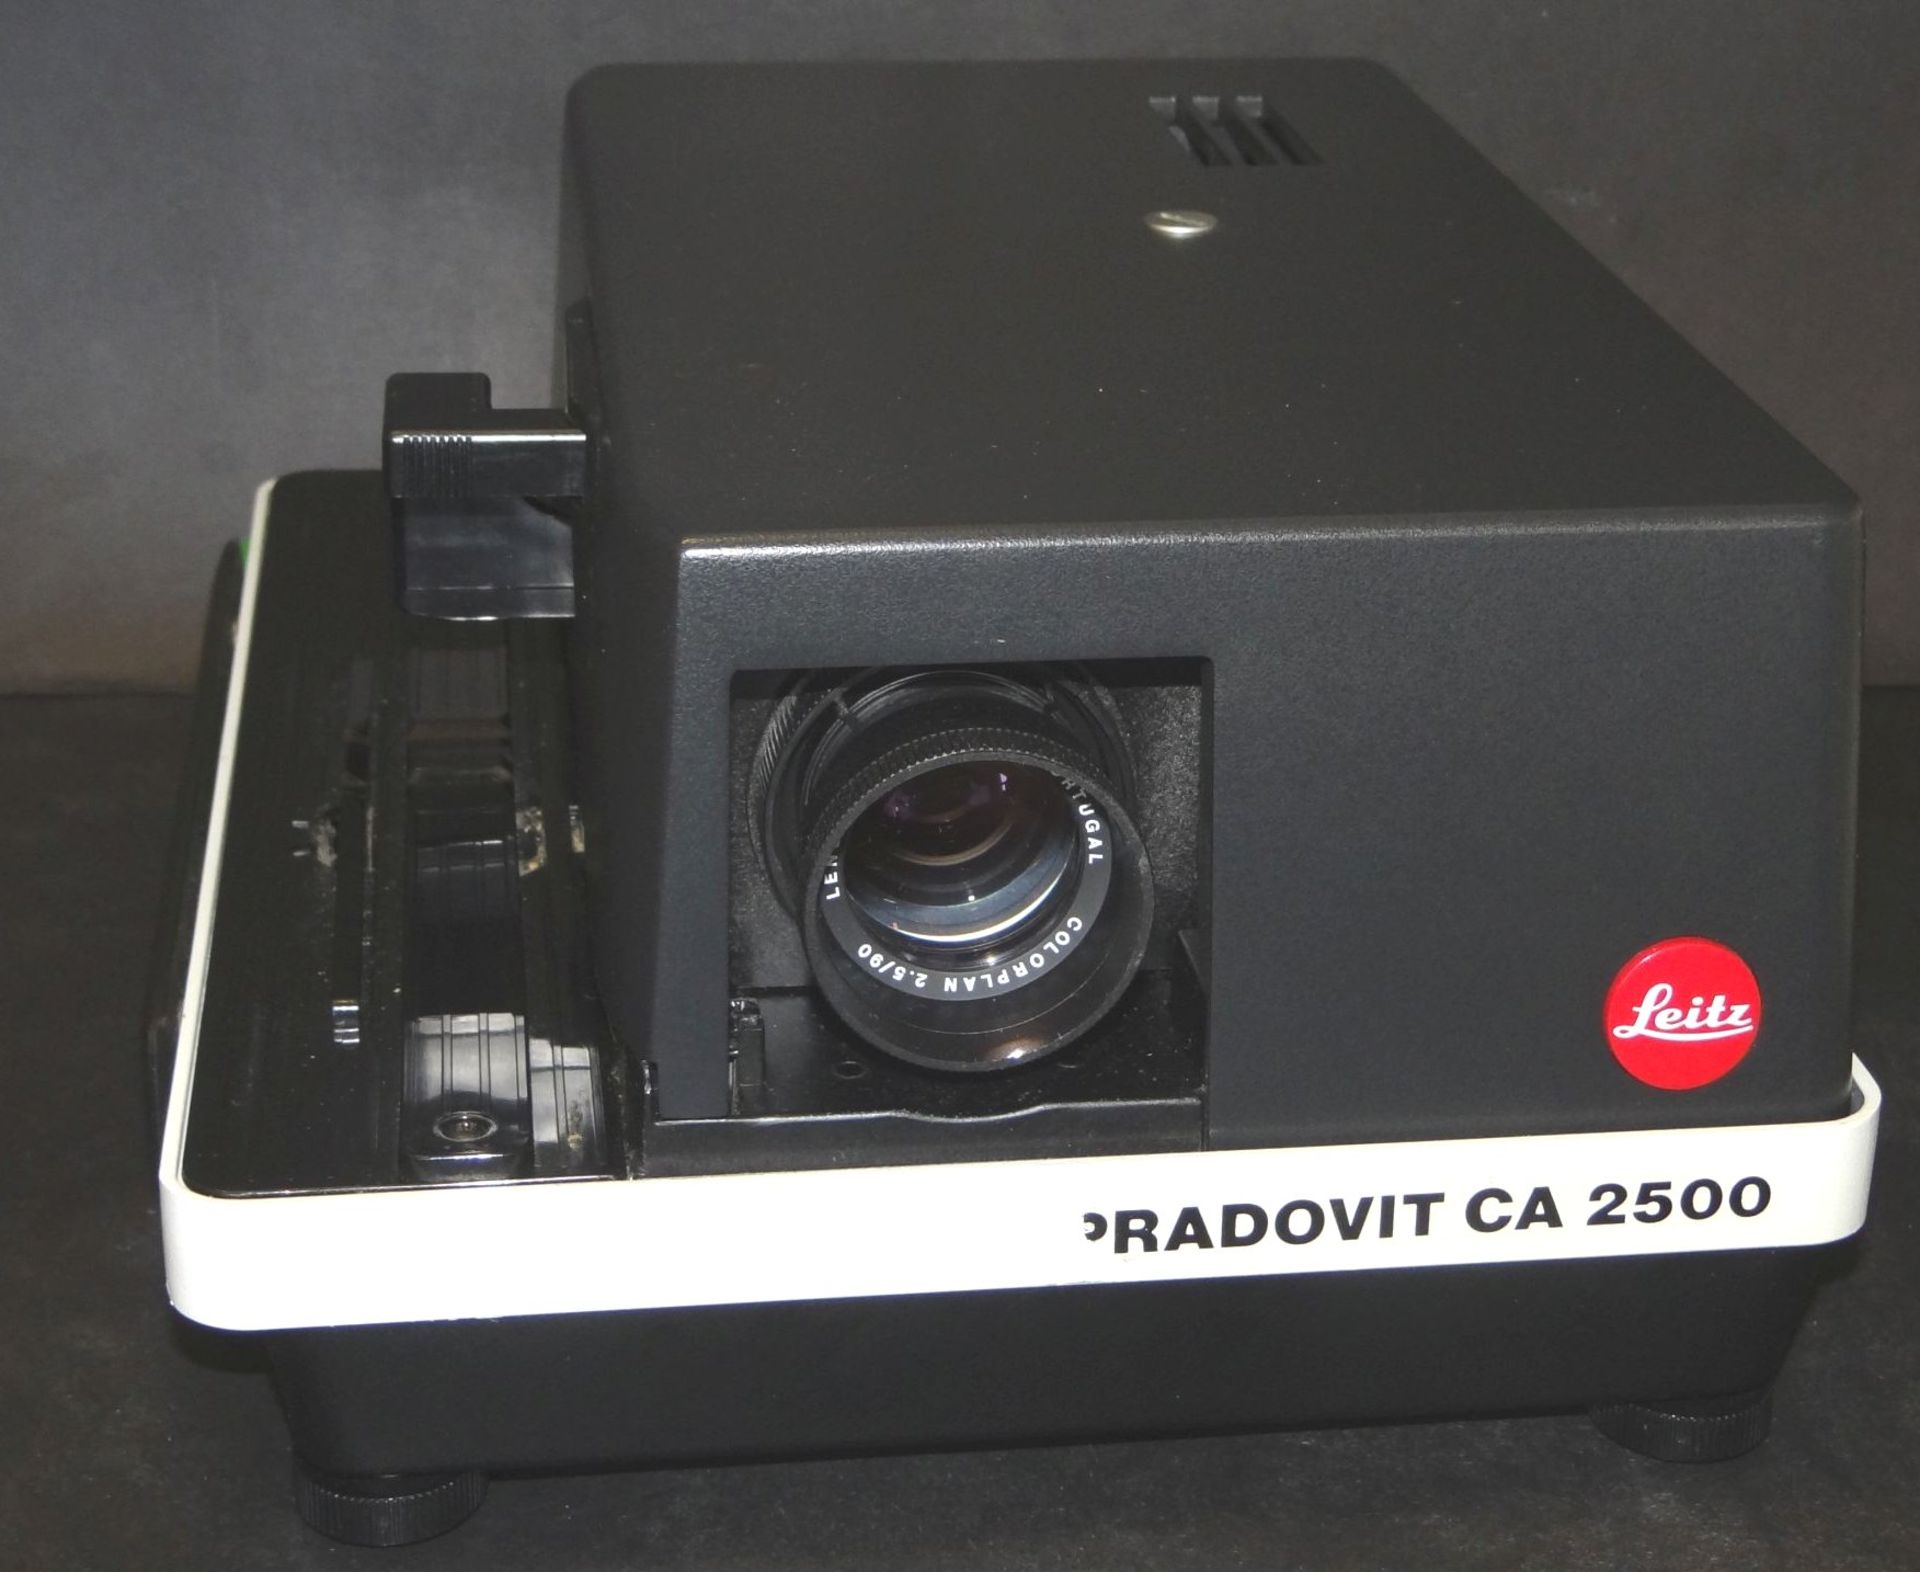 Leica Leitz Pradovit CA 2500 Diaprojektor mit Colorplan 2,5/90 in Koffer, ohne Kabel und Kabel-